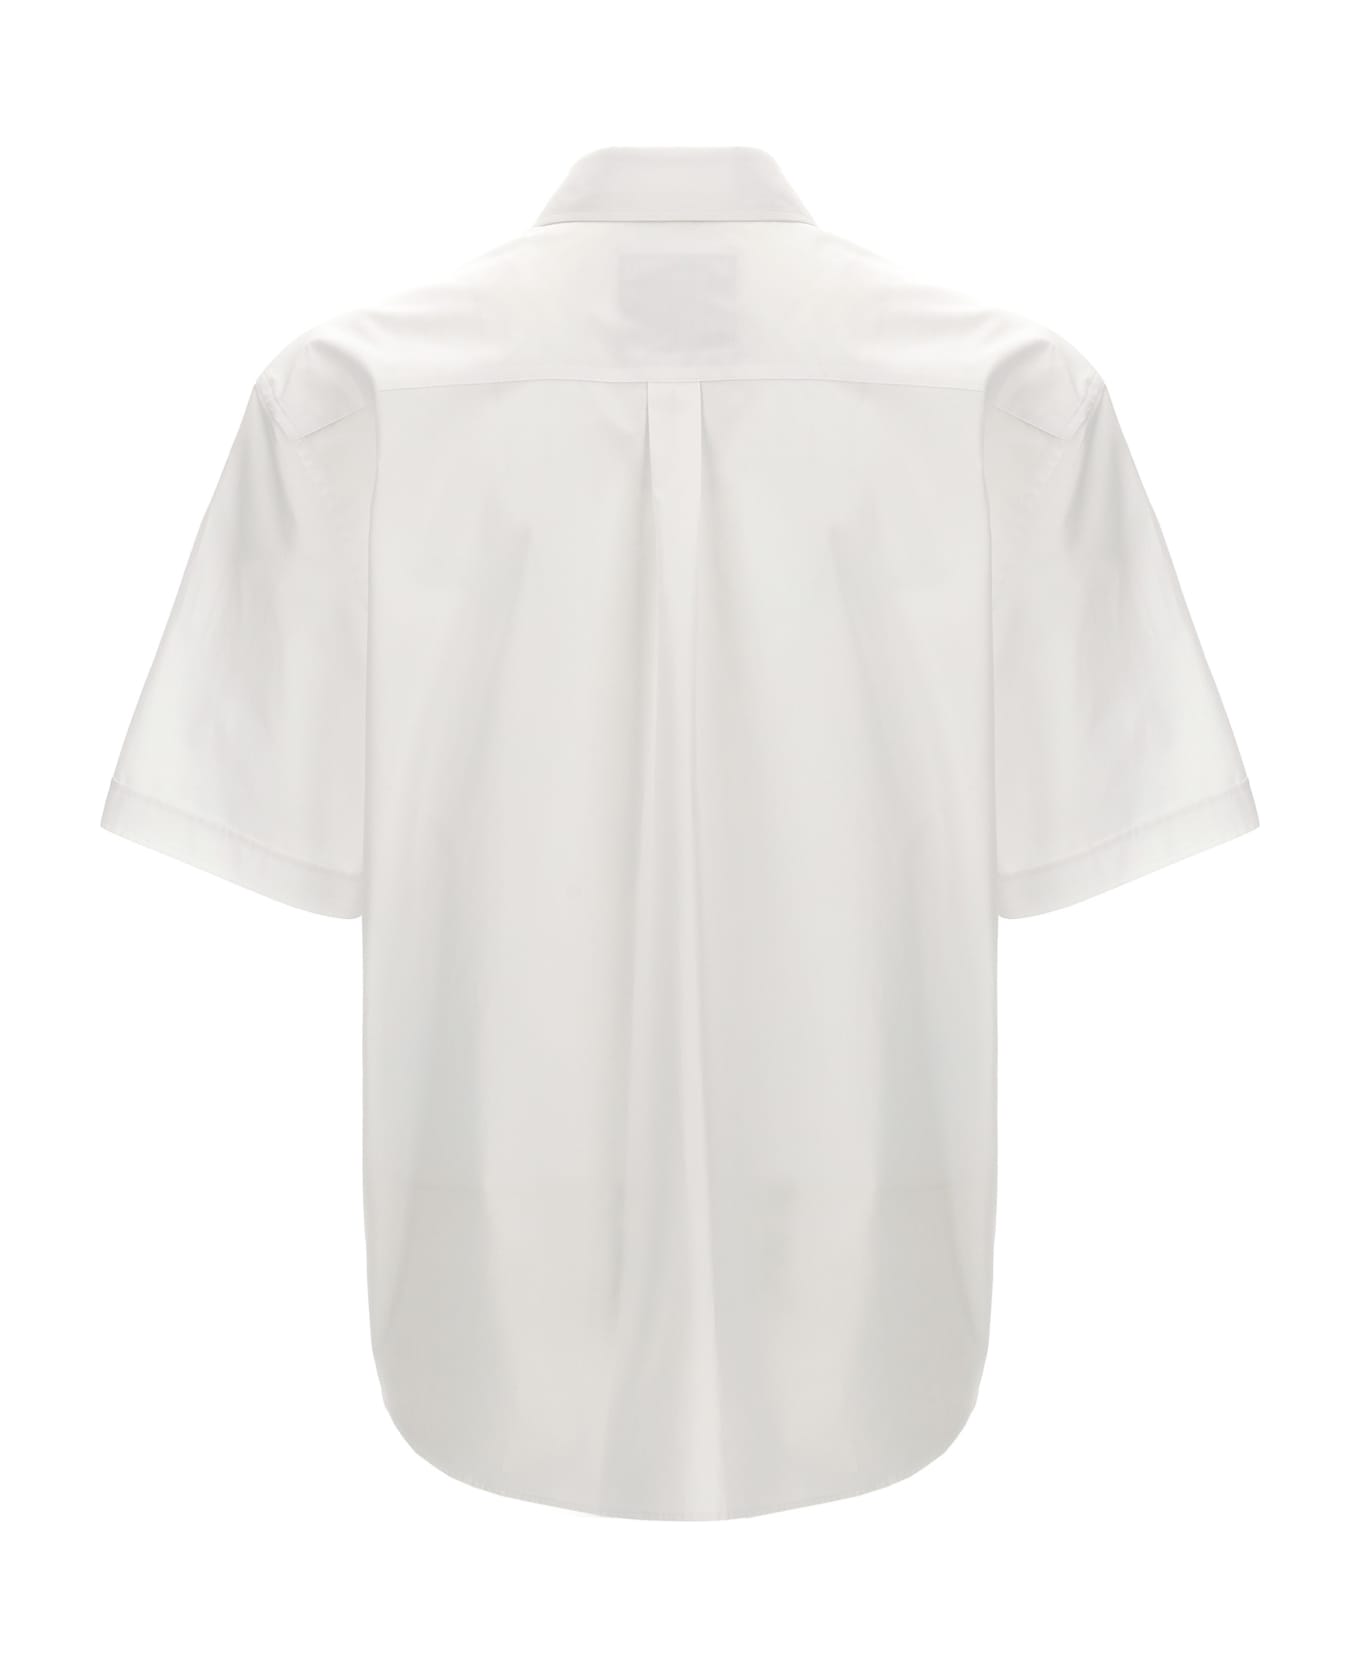 Moschino 'in Love We Trust' Shirt - White シャツ